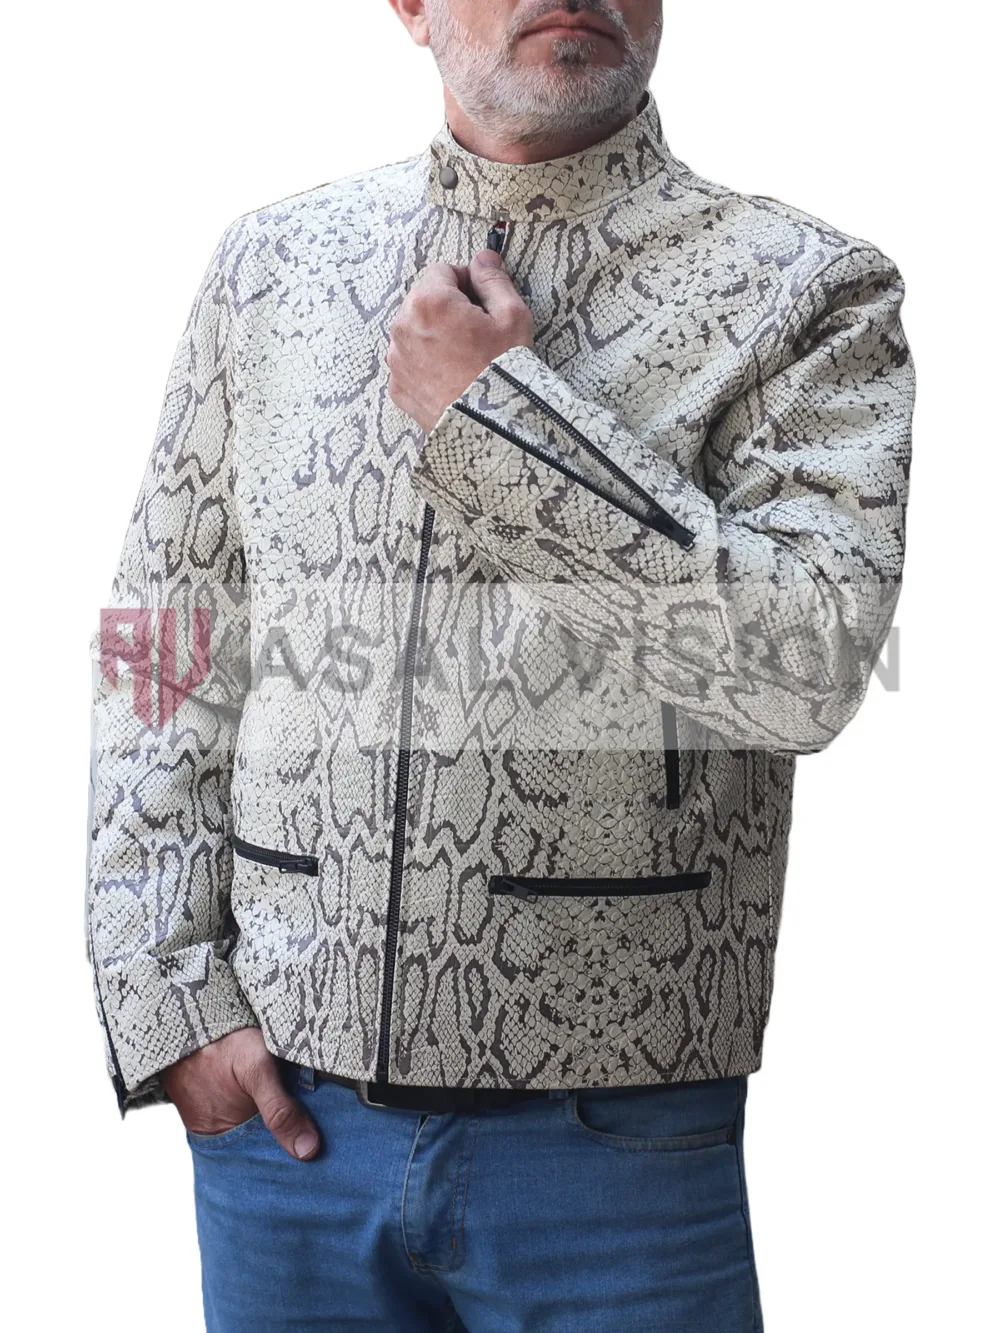 Jason Momoa Dante Snakeskin Leather Jacket